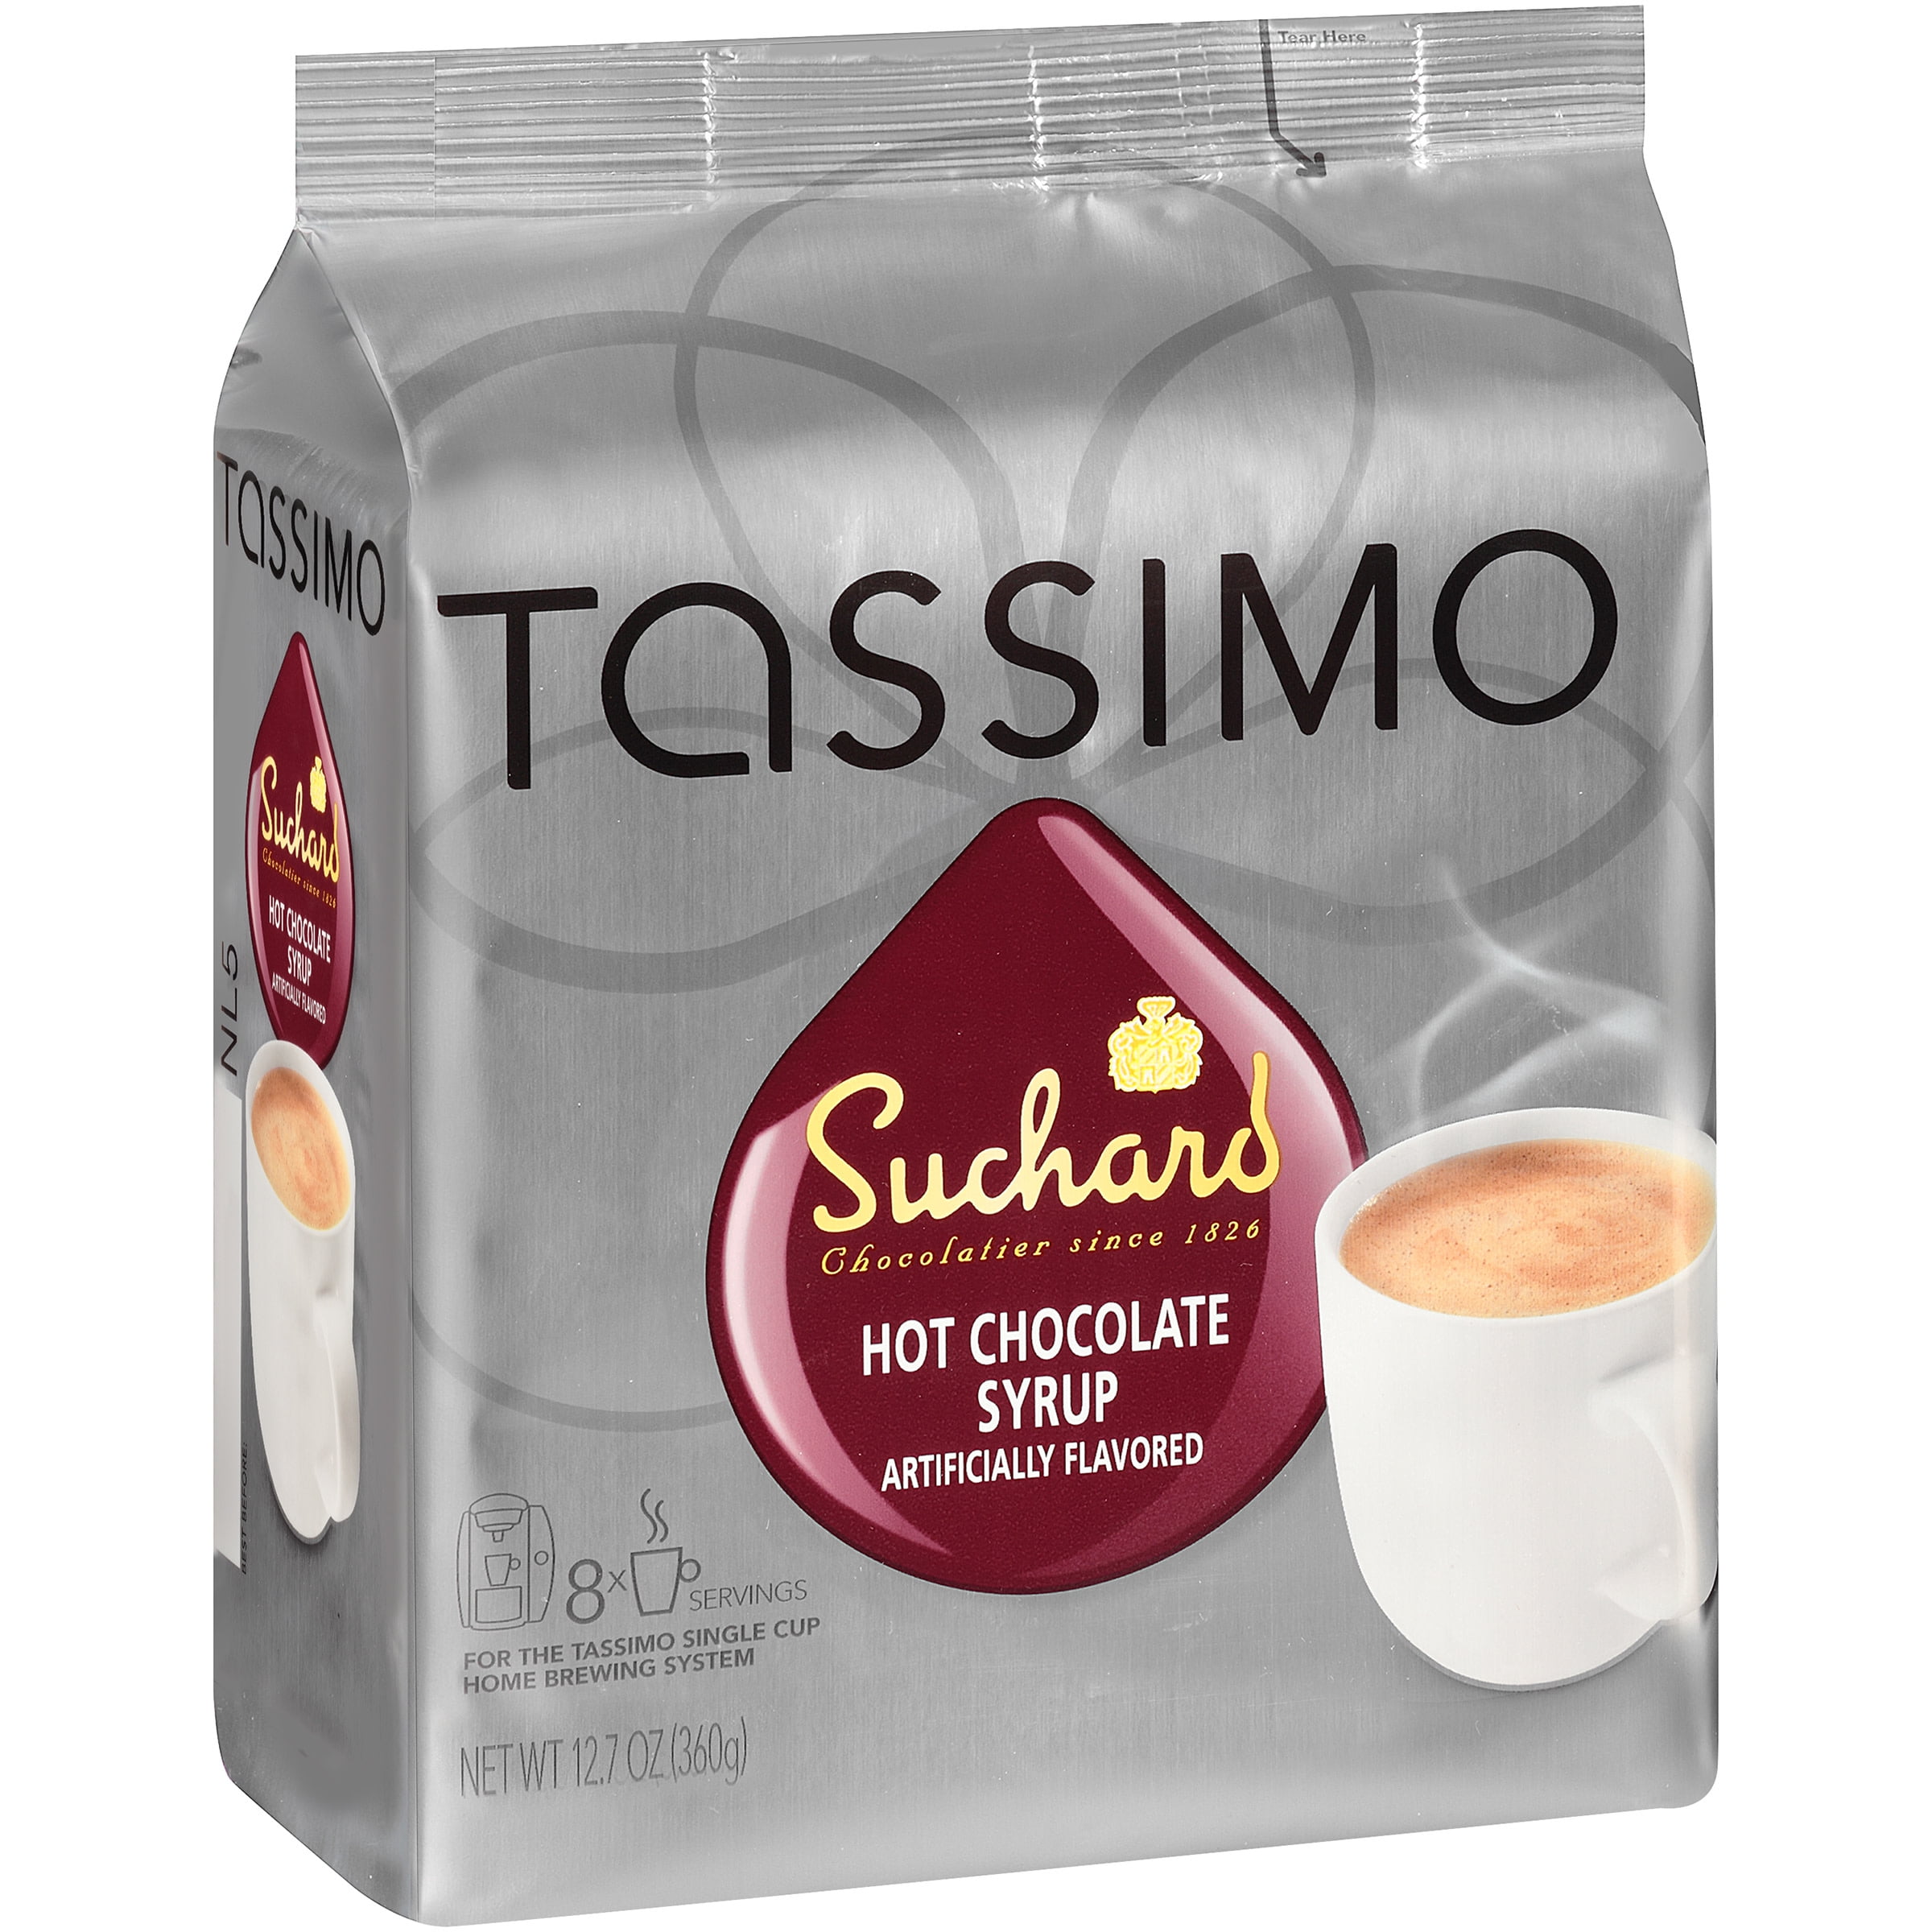 Tassimo Suchard Hot Chocolate Capsules 16 Drinks